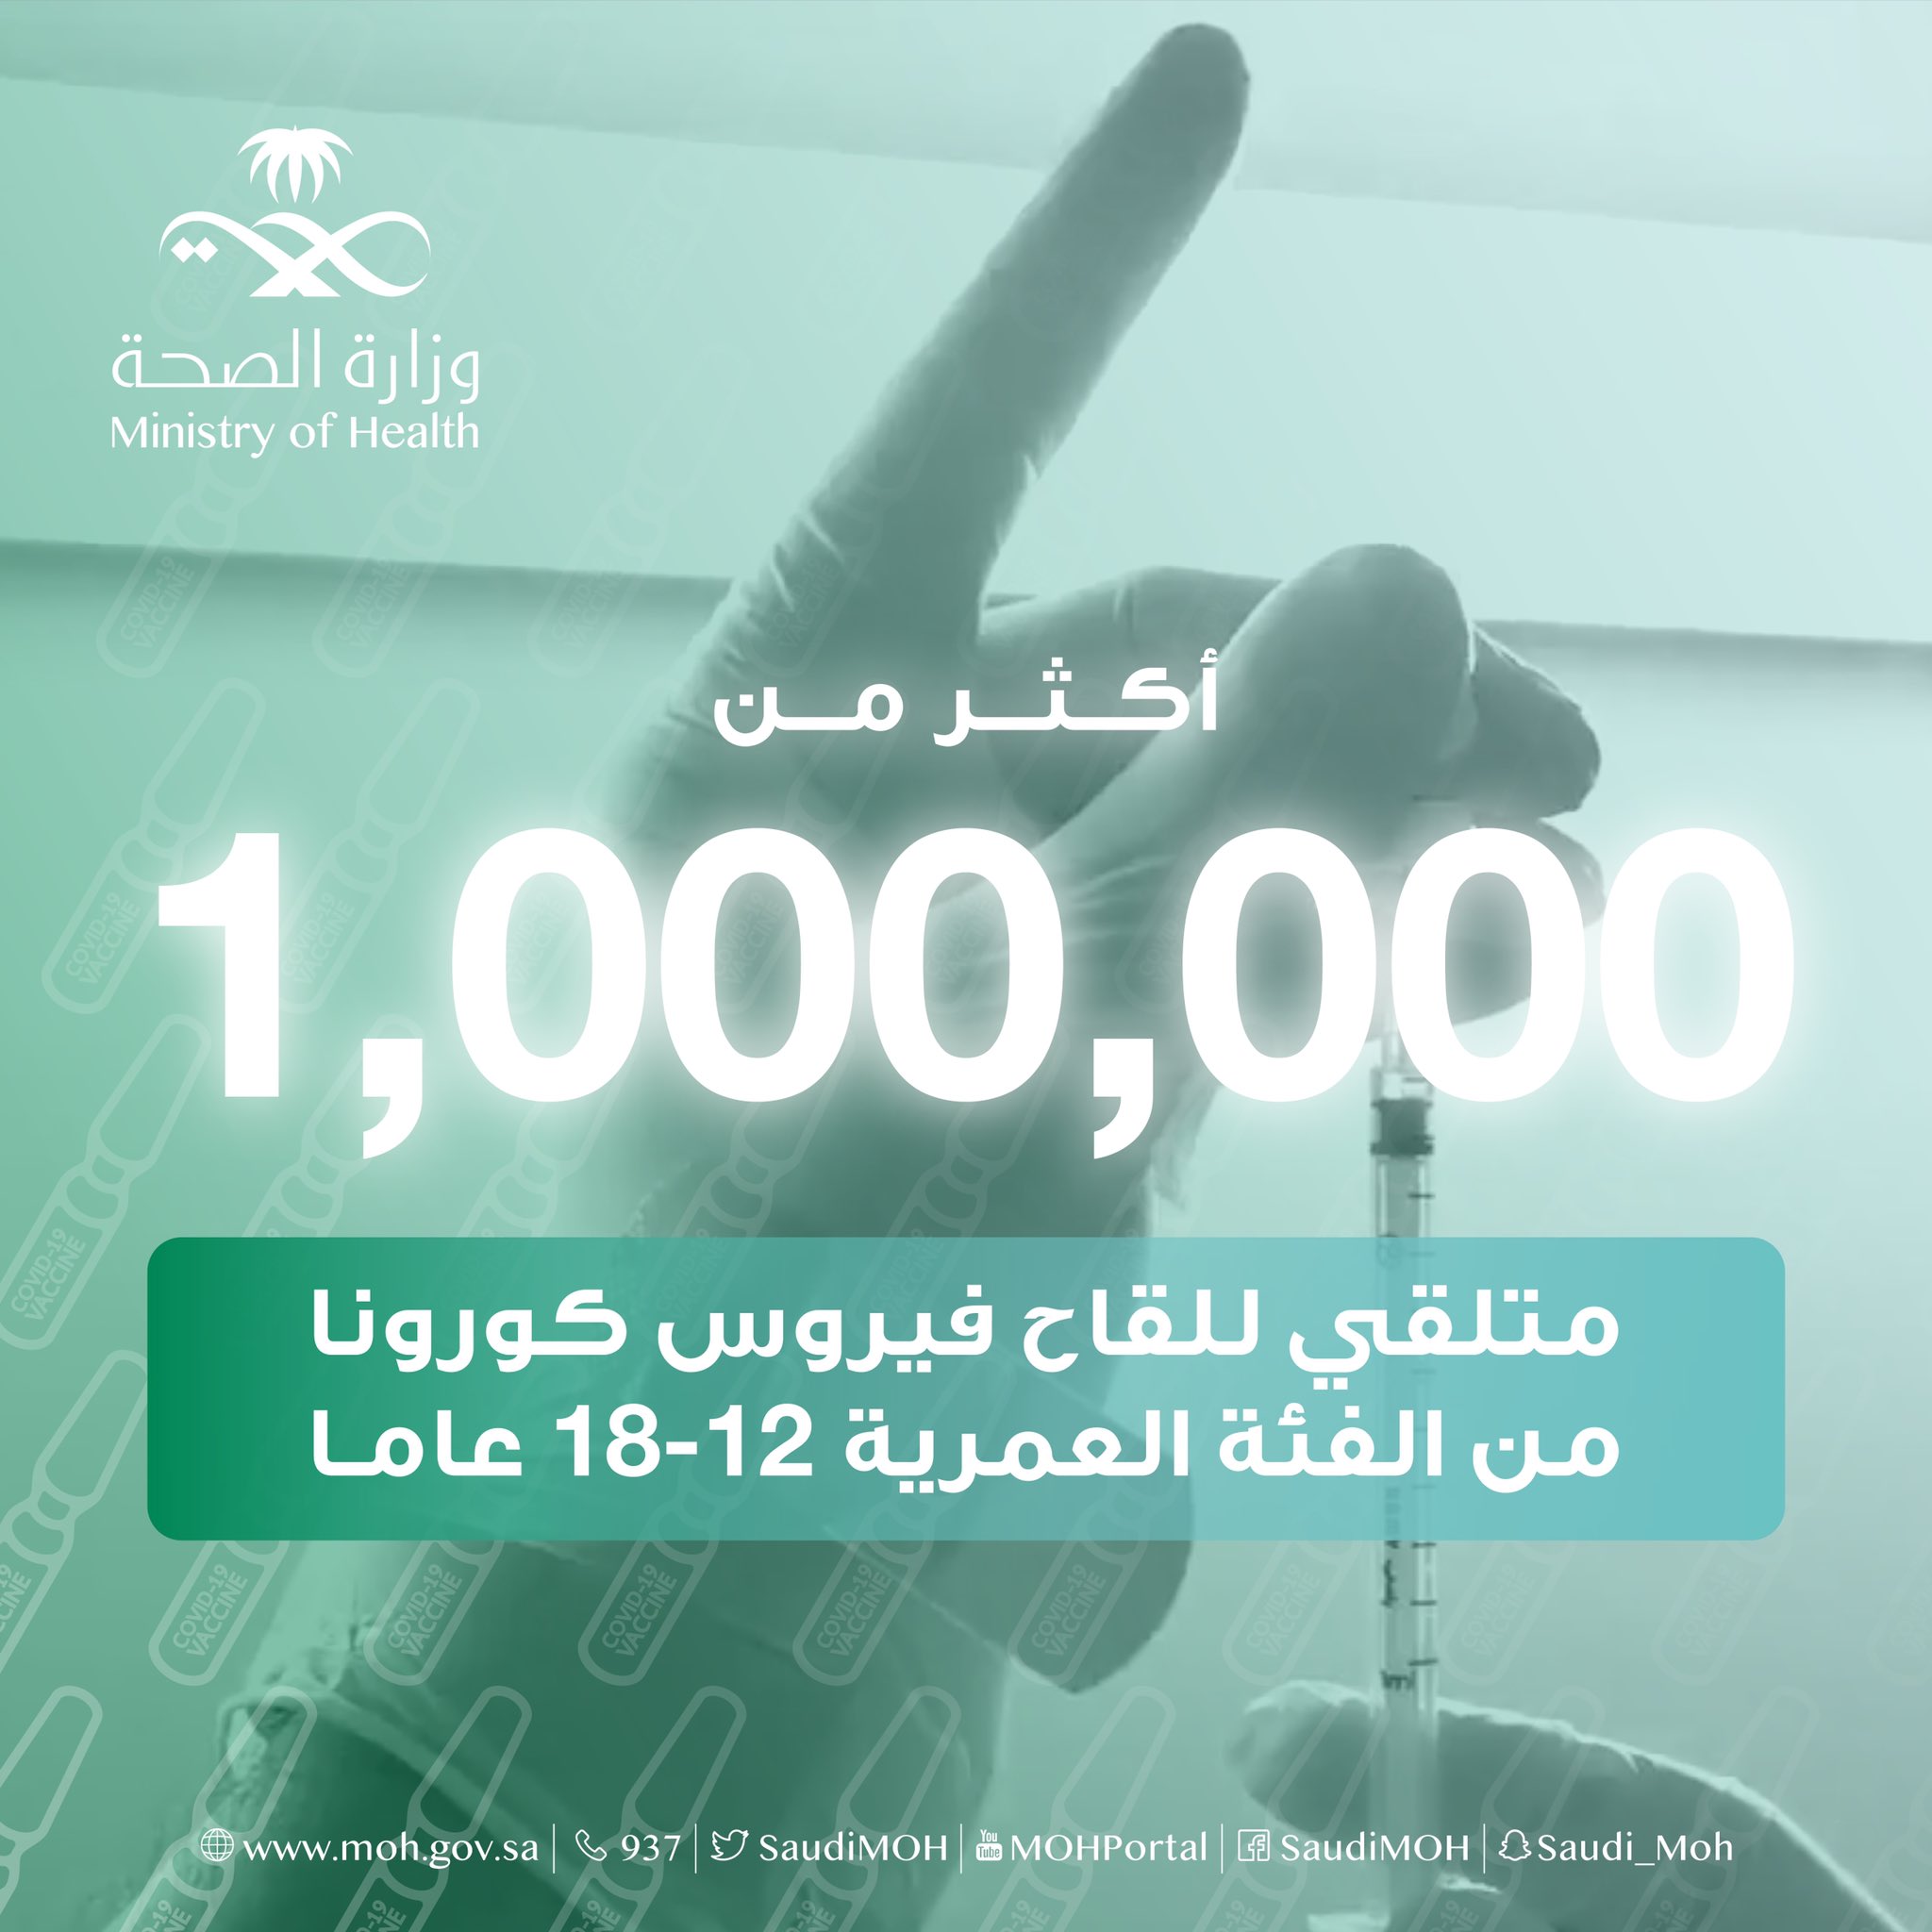 إعطاء أكثر من مليون جرعة لقاح كورونا للفئات العمرية من 12- 18 عامًا في السعودية